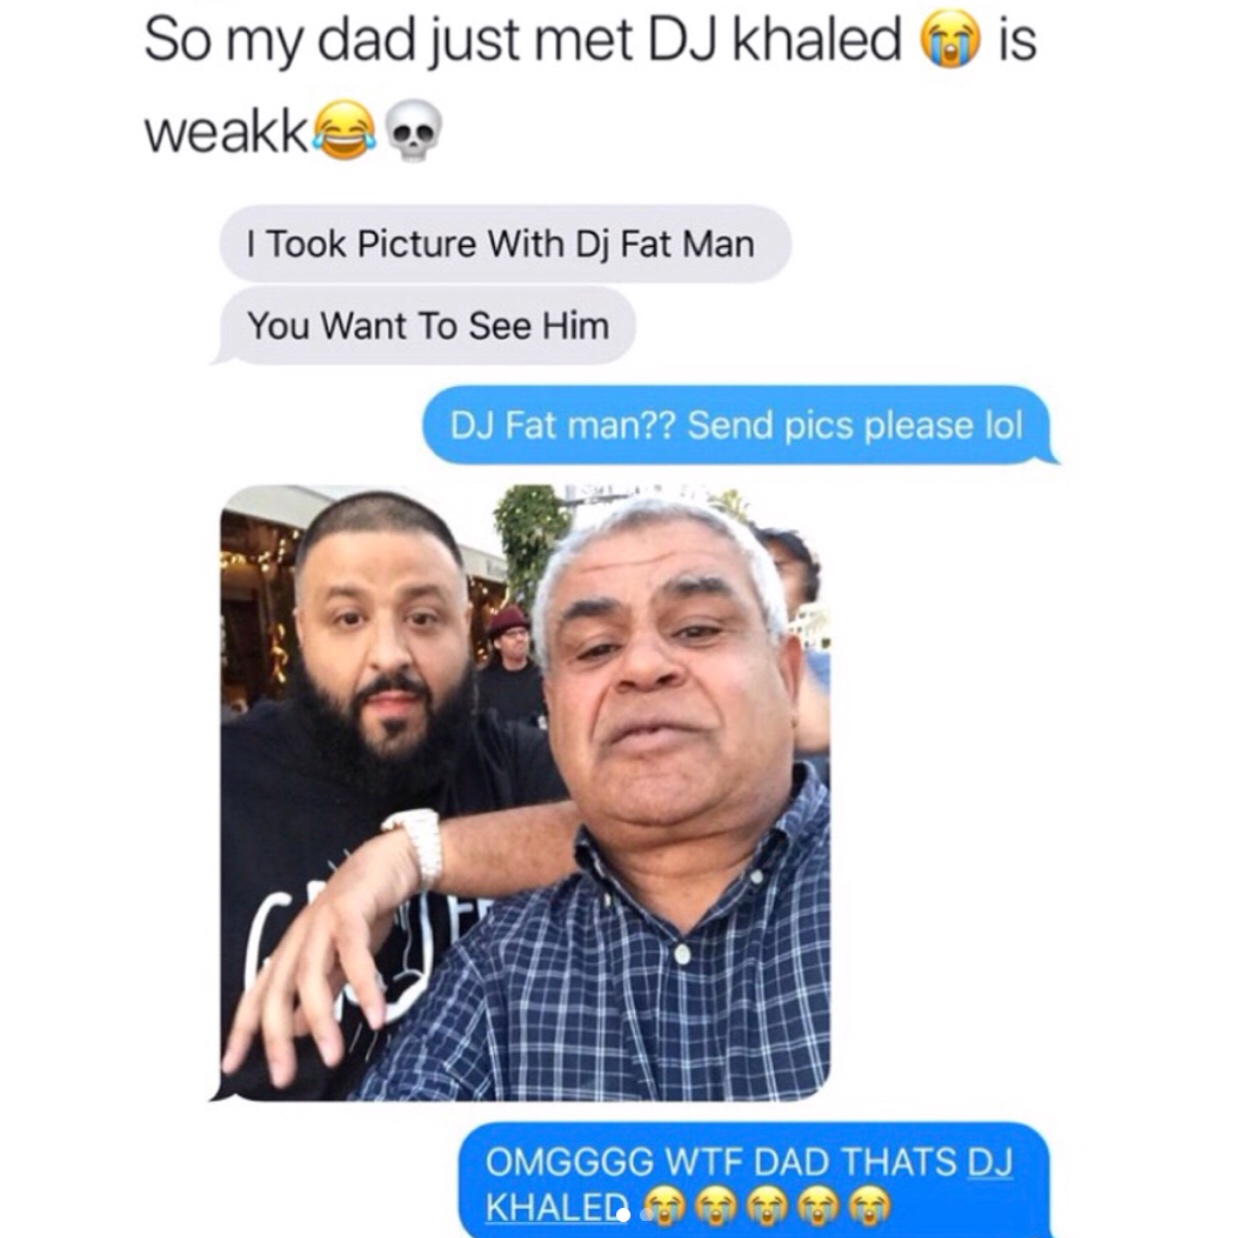 random dj fat man meme - is So my dad just met Dj Khaled weakka. I Took Picture With Dj Fat Man You Want To See Him Dj Fat man?? Send pics please lol Omgggg Wtf Dad Thats Dj Khaled